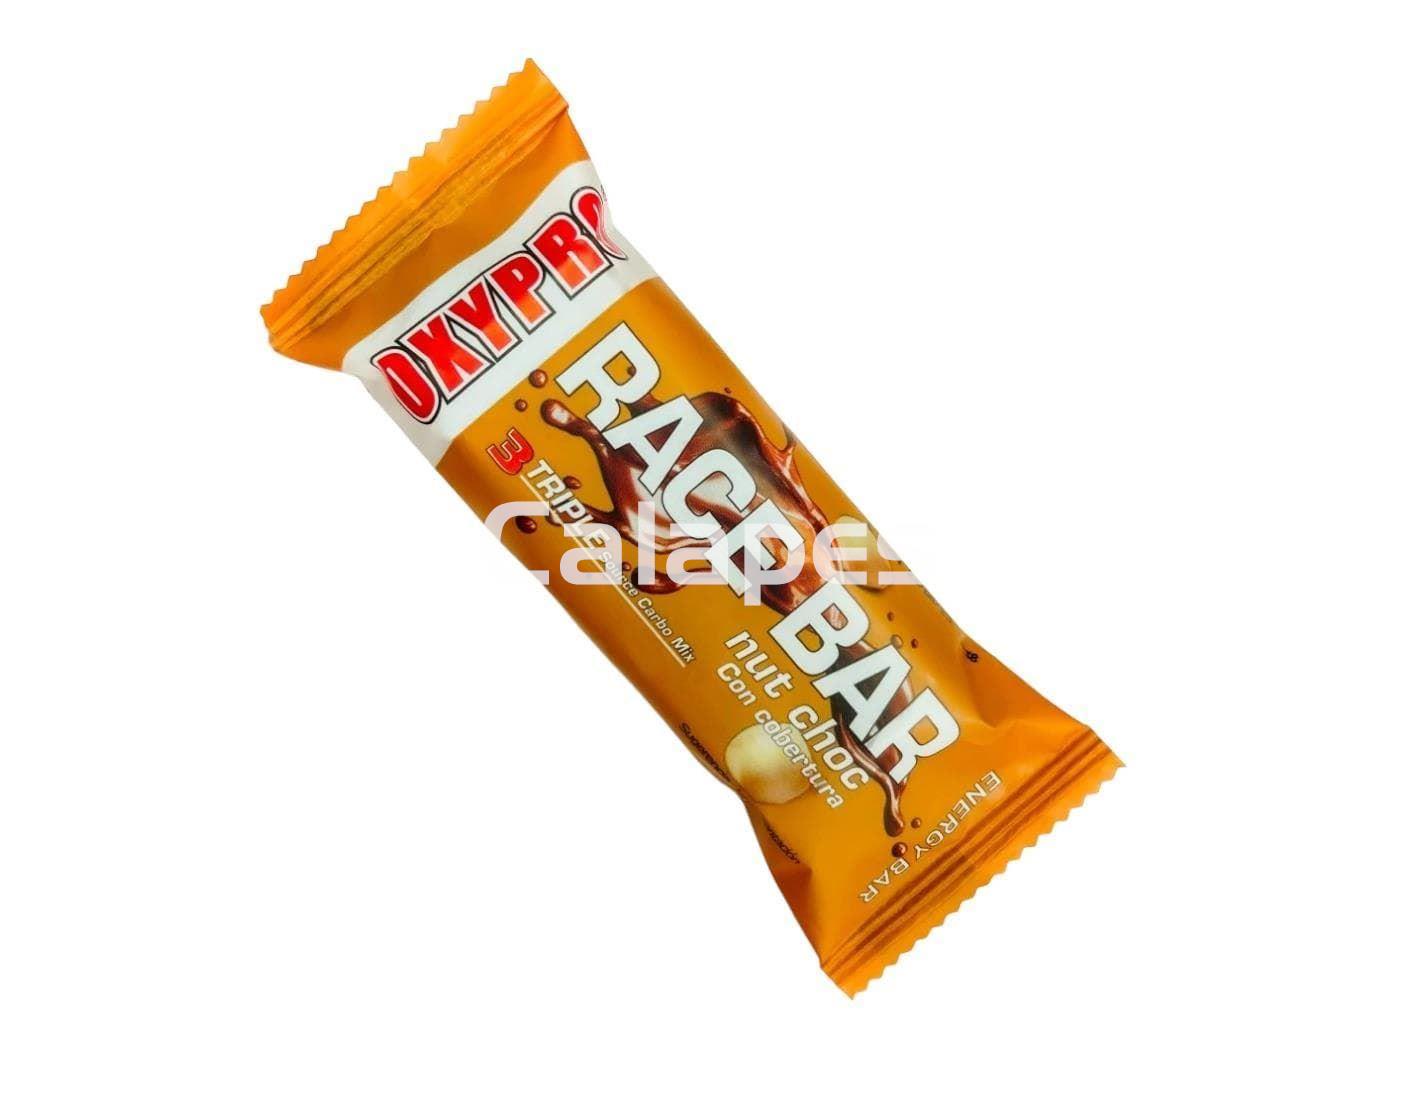 Oxypro Race Bar Chocolate avellana con cobertura (12 unidades) - Imagen 1